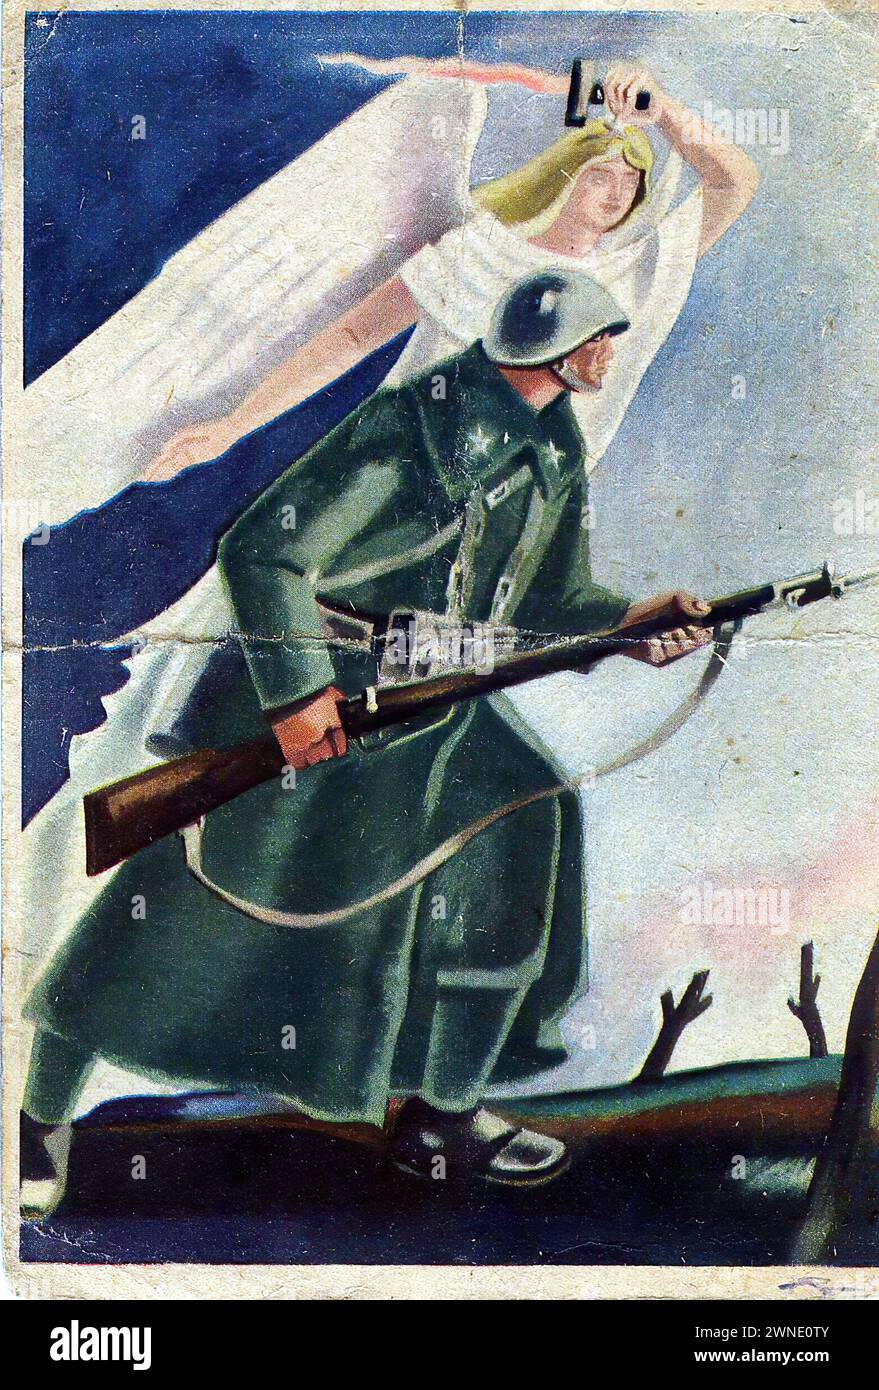 'LO' ['IT'] Une carte de propagande italienne de la seconde Guerre mondiale montrant un soldat avec une figure angélique au-dessus de lui, sur un fond bleu avec une épée blanche. Le style est dramatique et héroïque, avec un accent sur le soutien patriotique et spirituel au soldat, révélateur de la propagande en temps de guerre. Banque D'Images